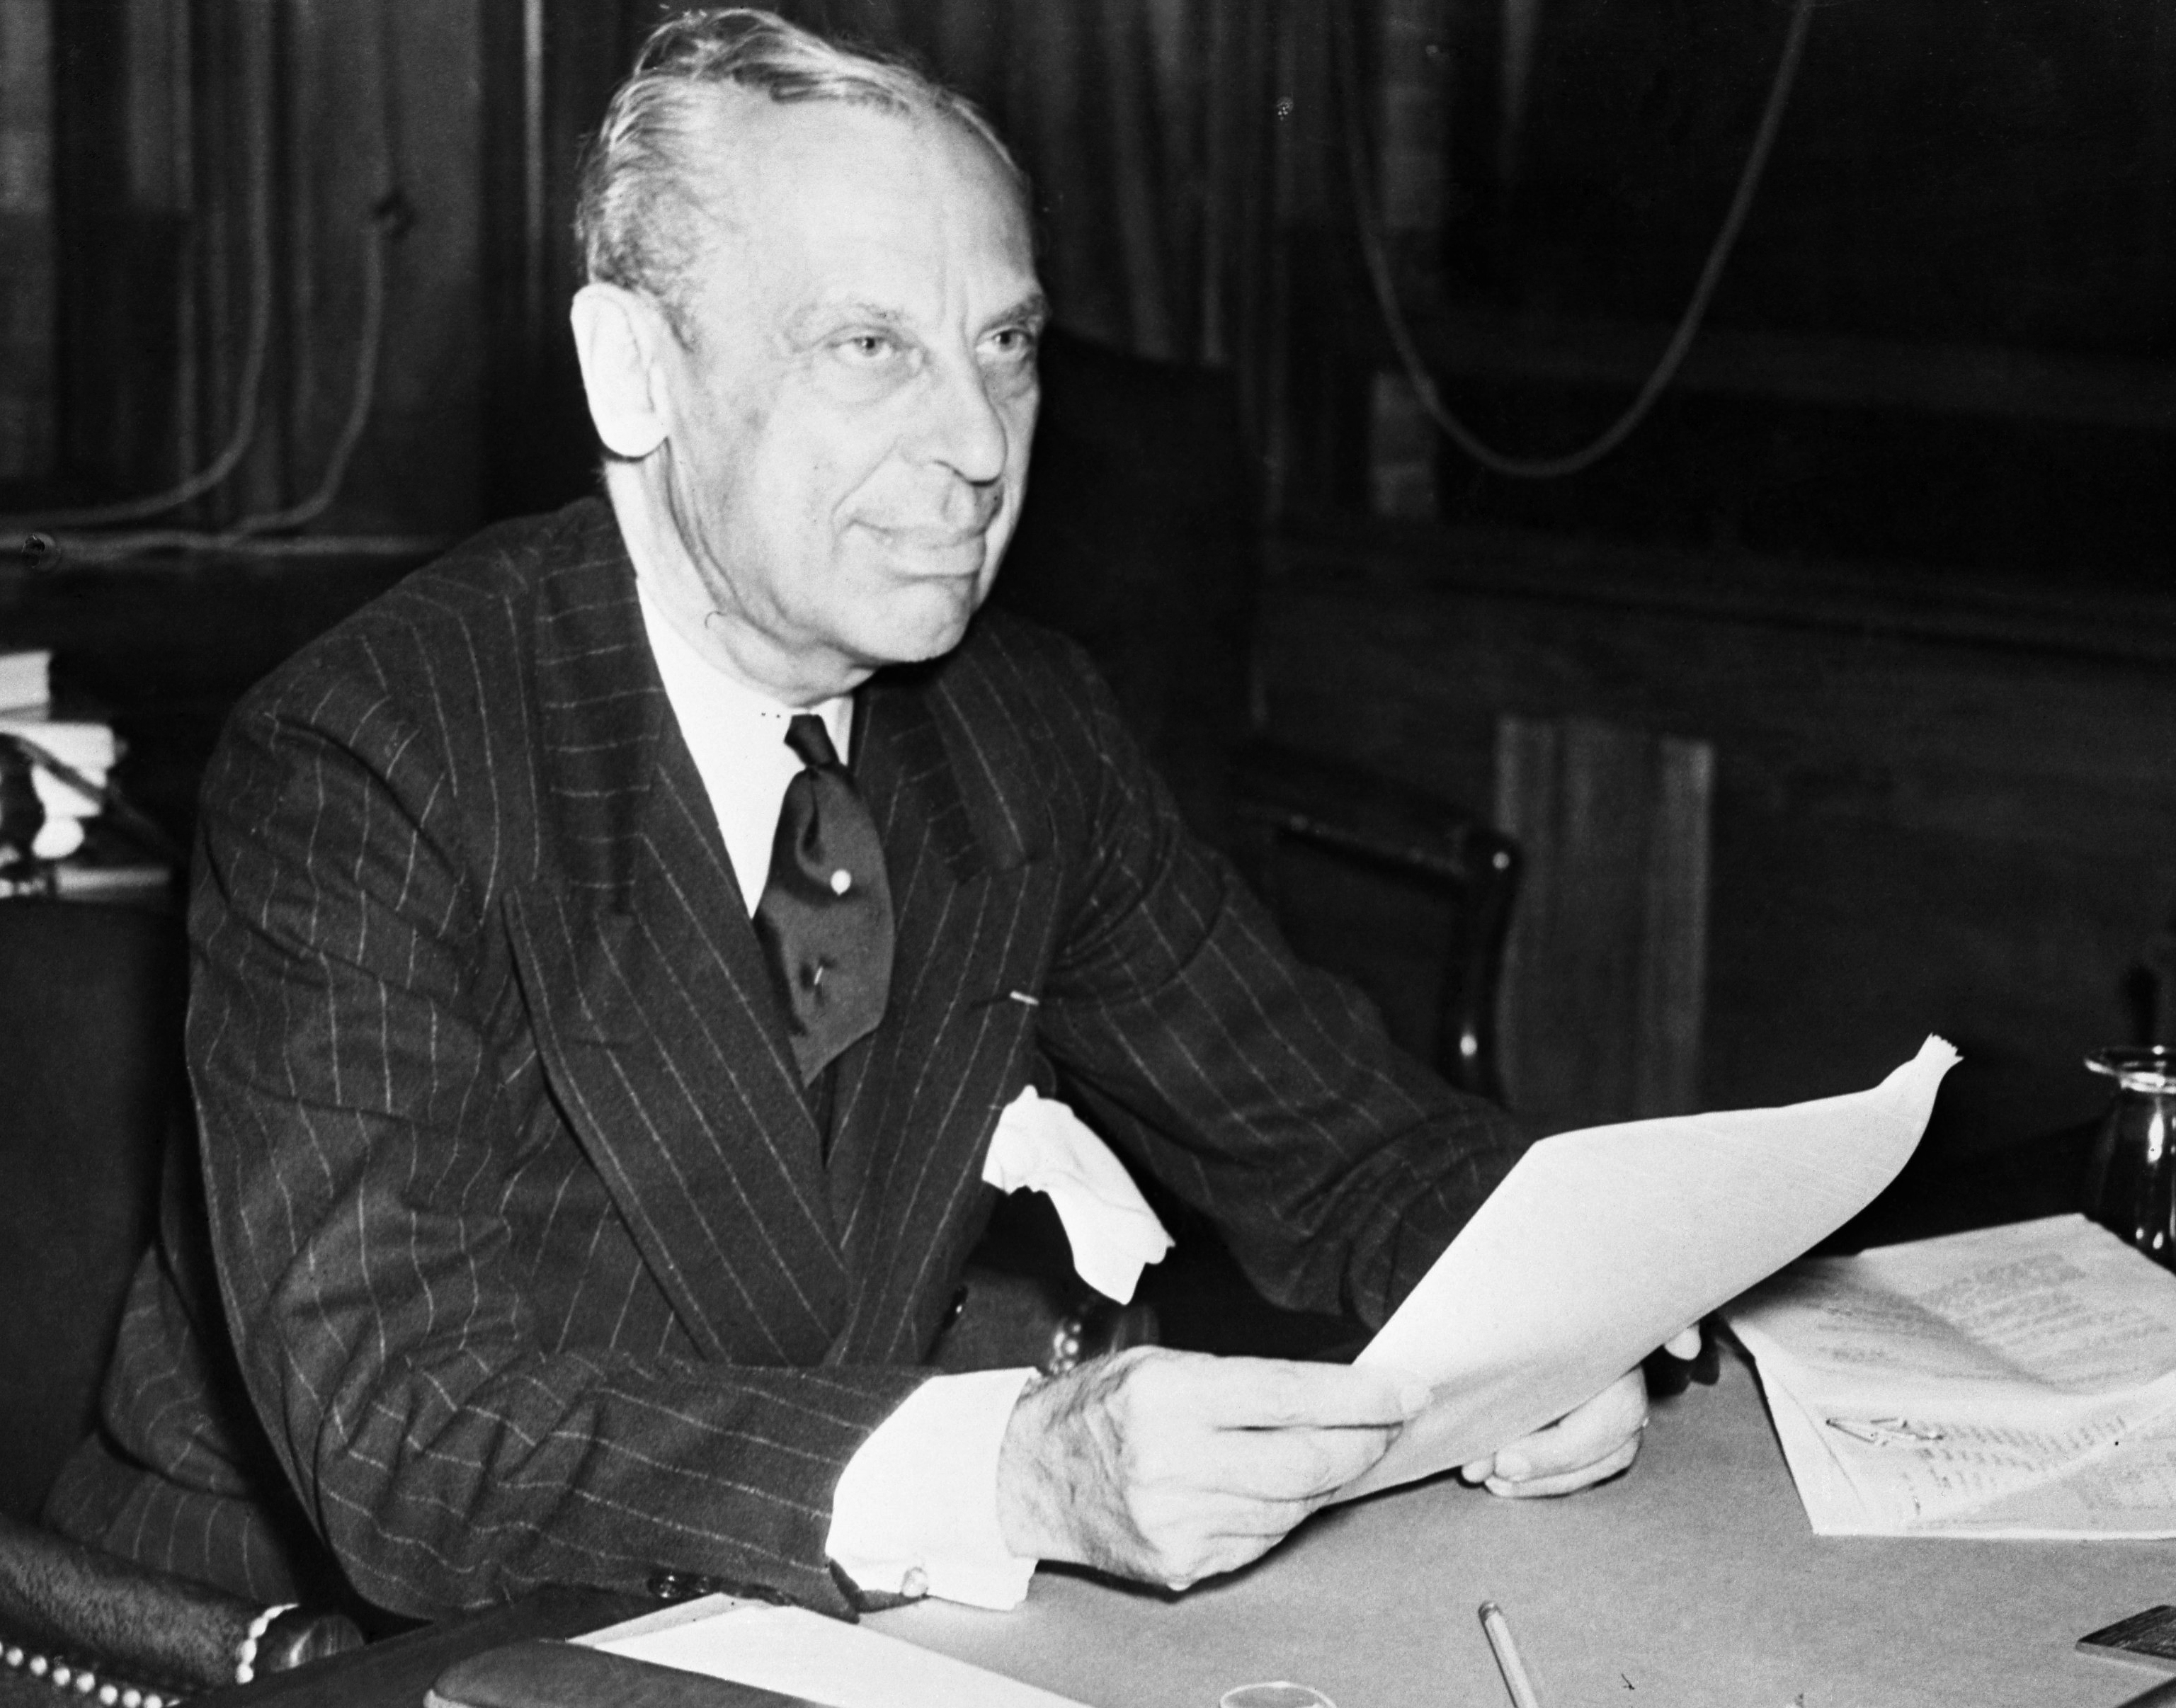 Alfred P. Sloan shown around Nov. 2, 1945.